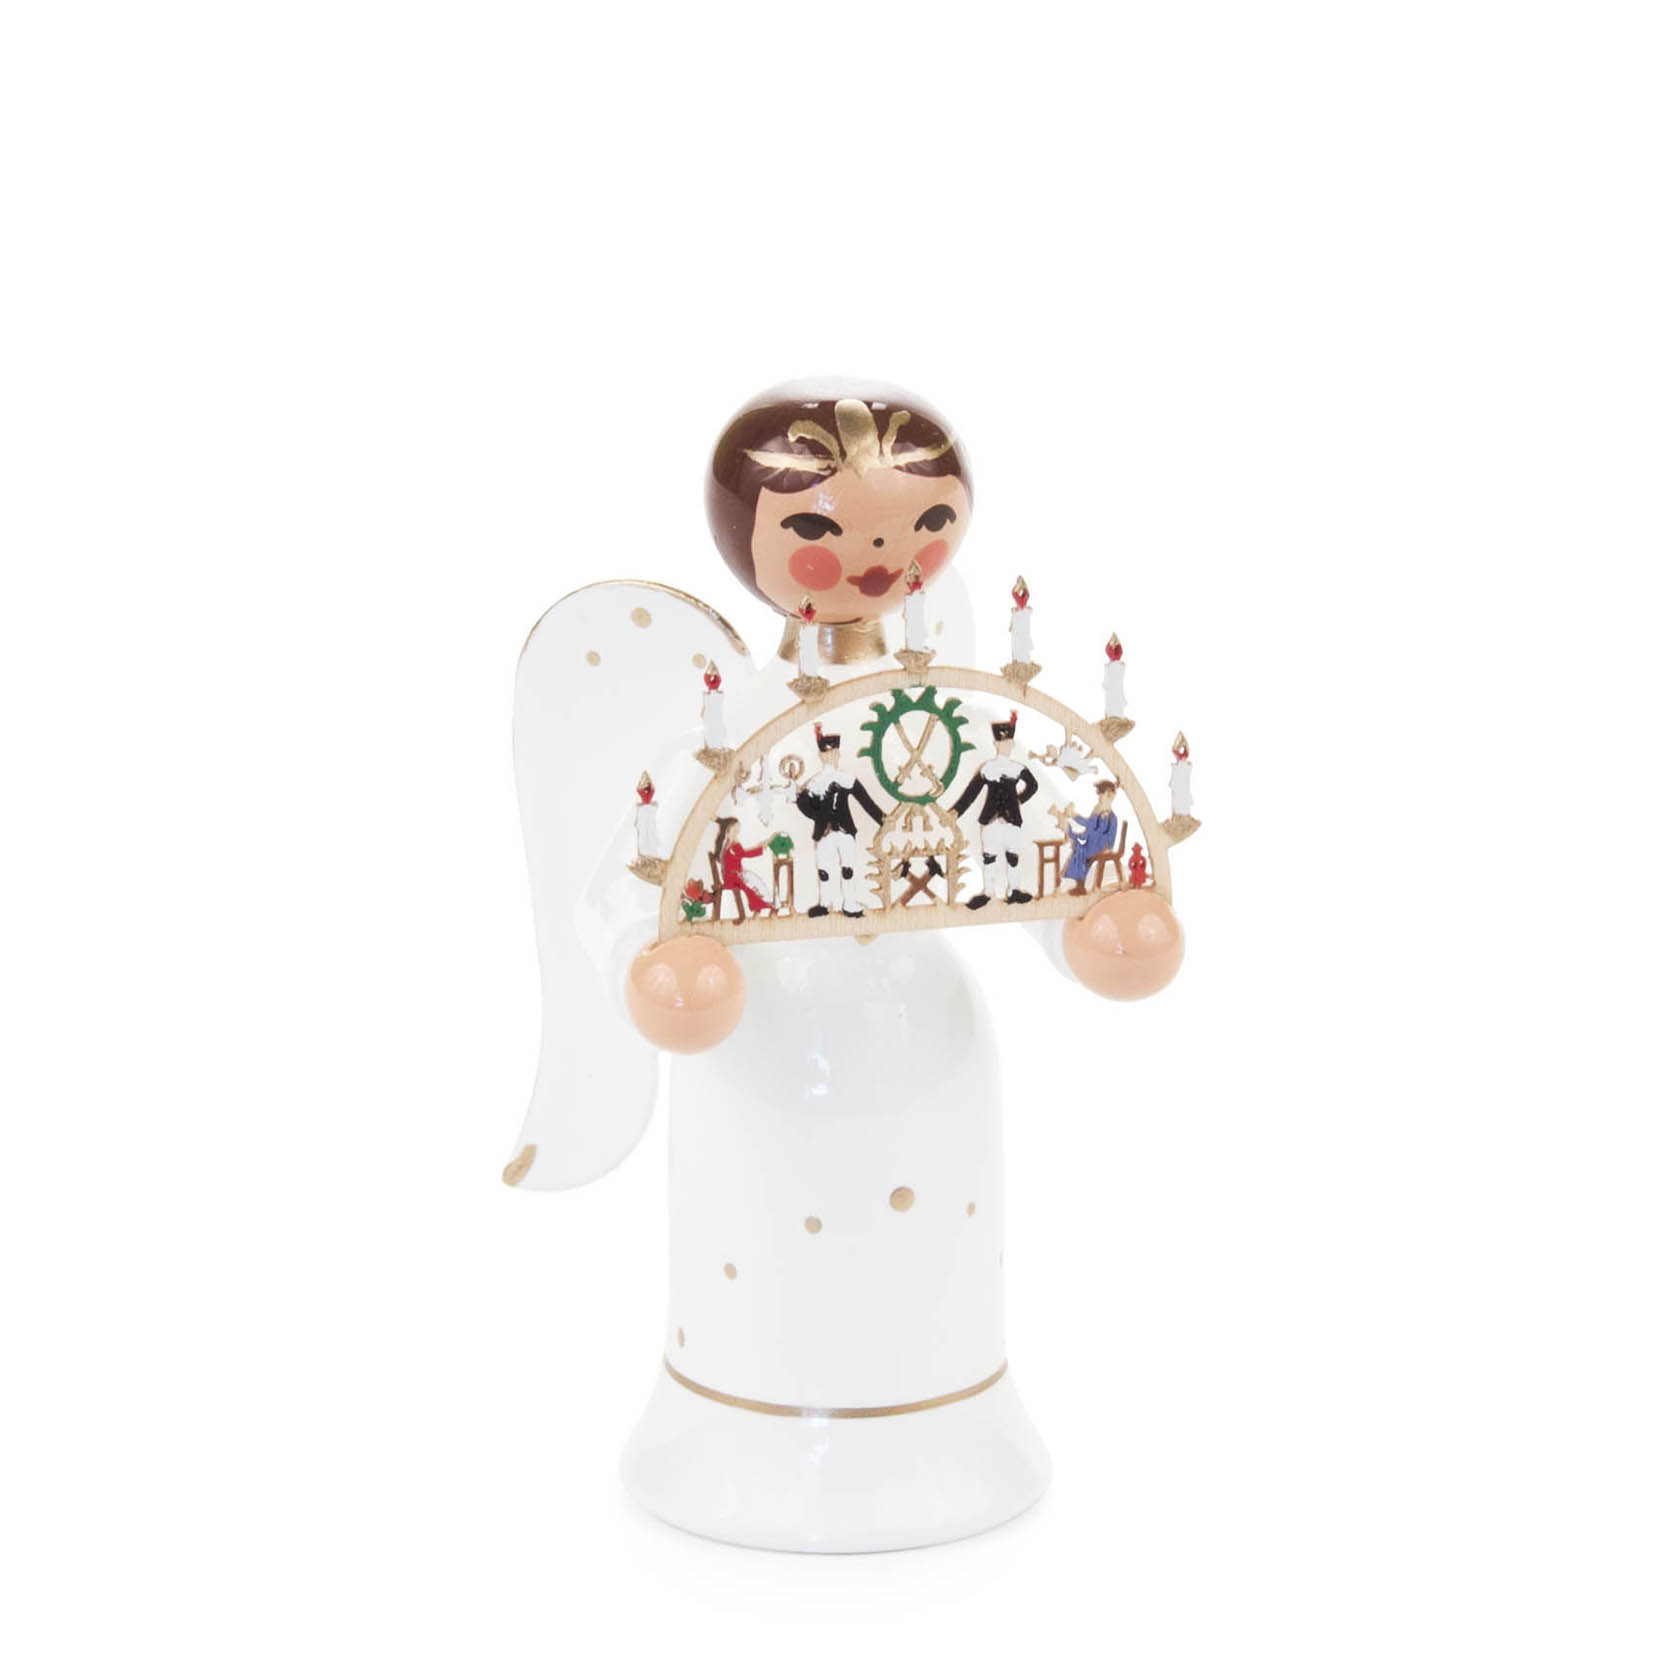 Miniatur Engel mit Schwibbogen "Erzgebirge" im Dregeno Online Shop günstig kaufen